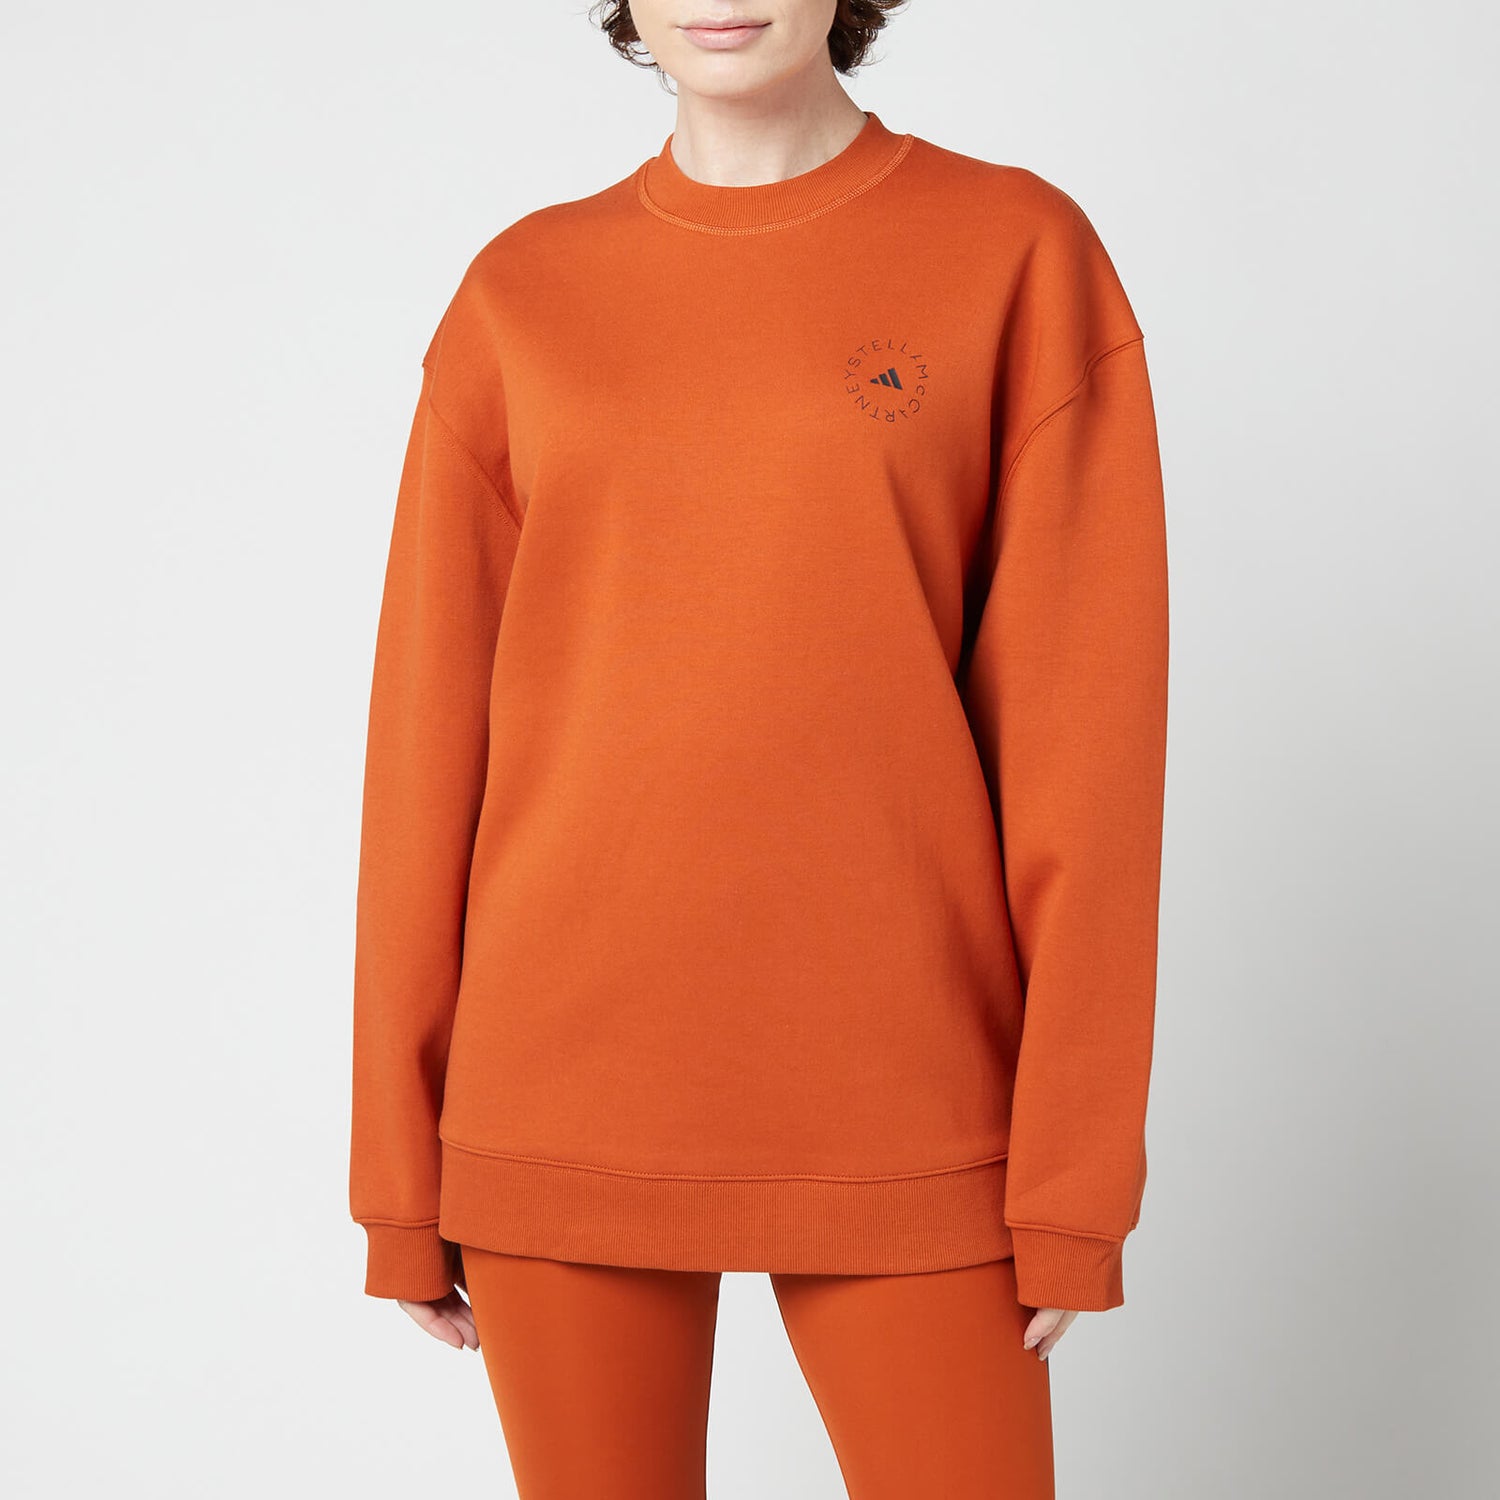 adidas by Stella McCartney Women's Asmc Sc Sweatshirt - Burbri